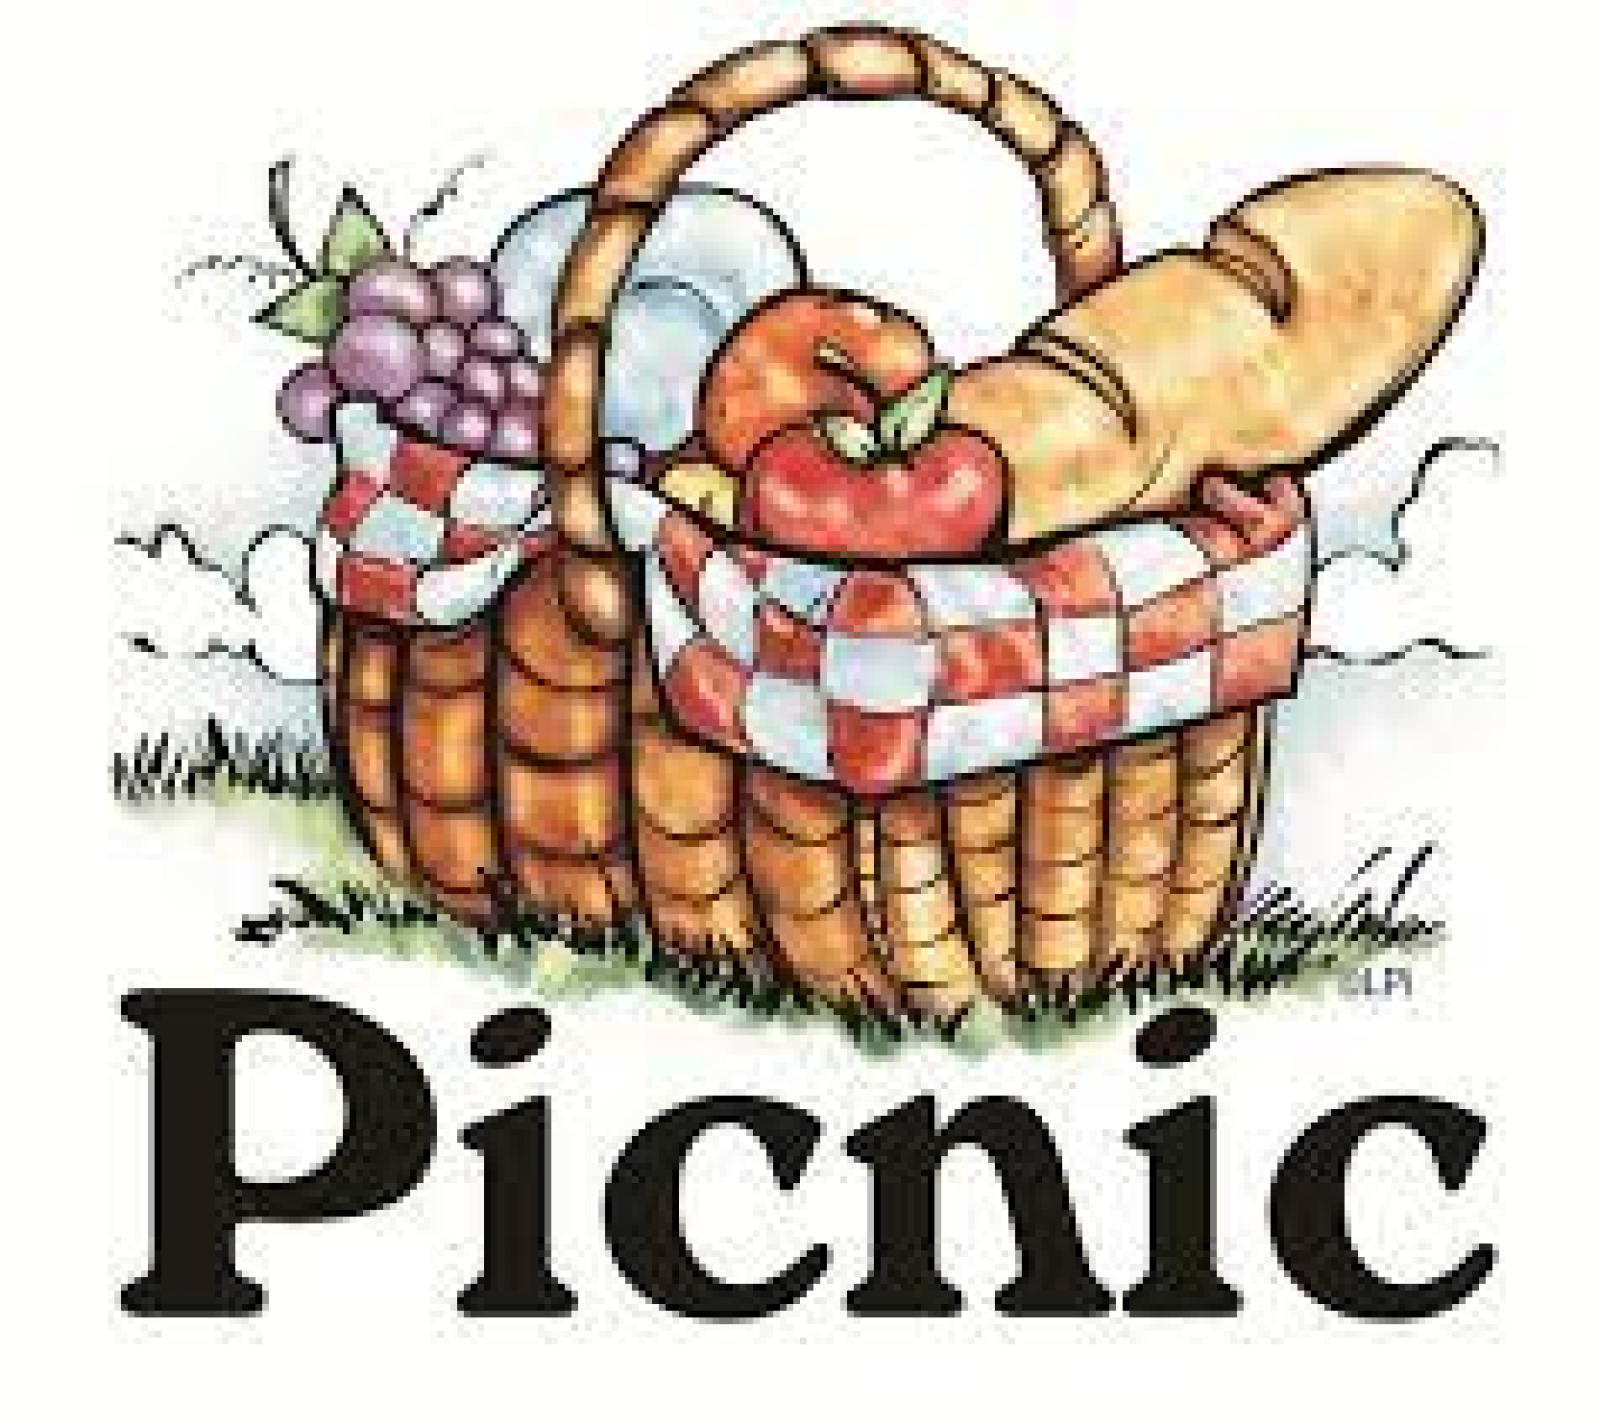 school picnic clip art